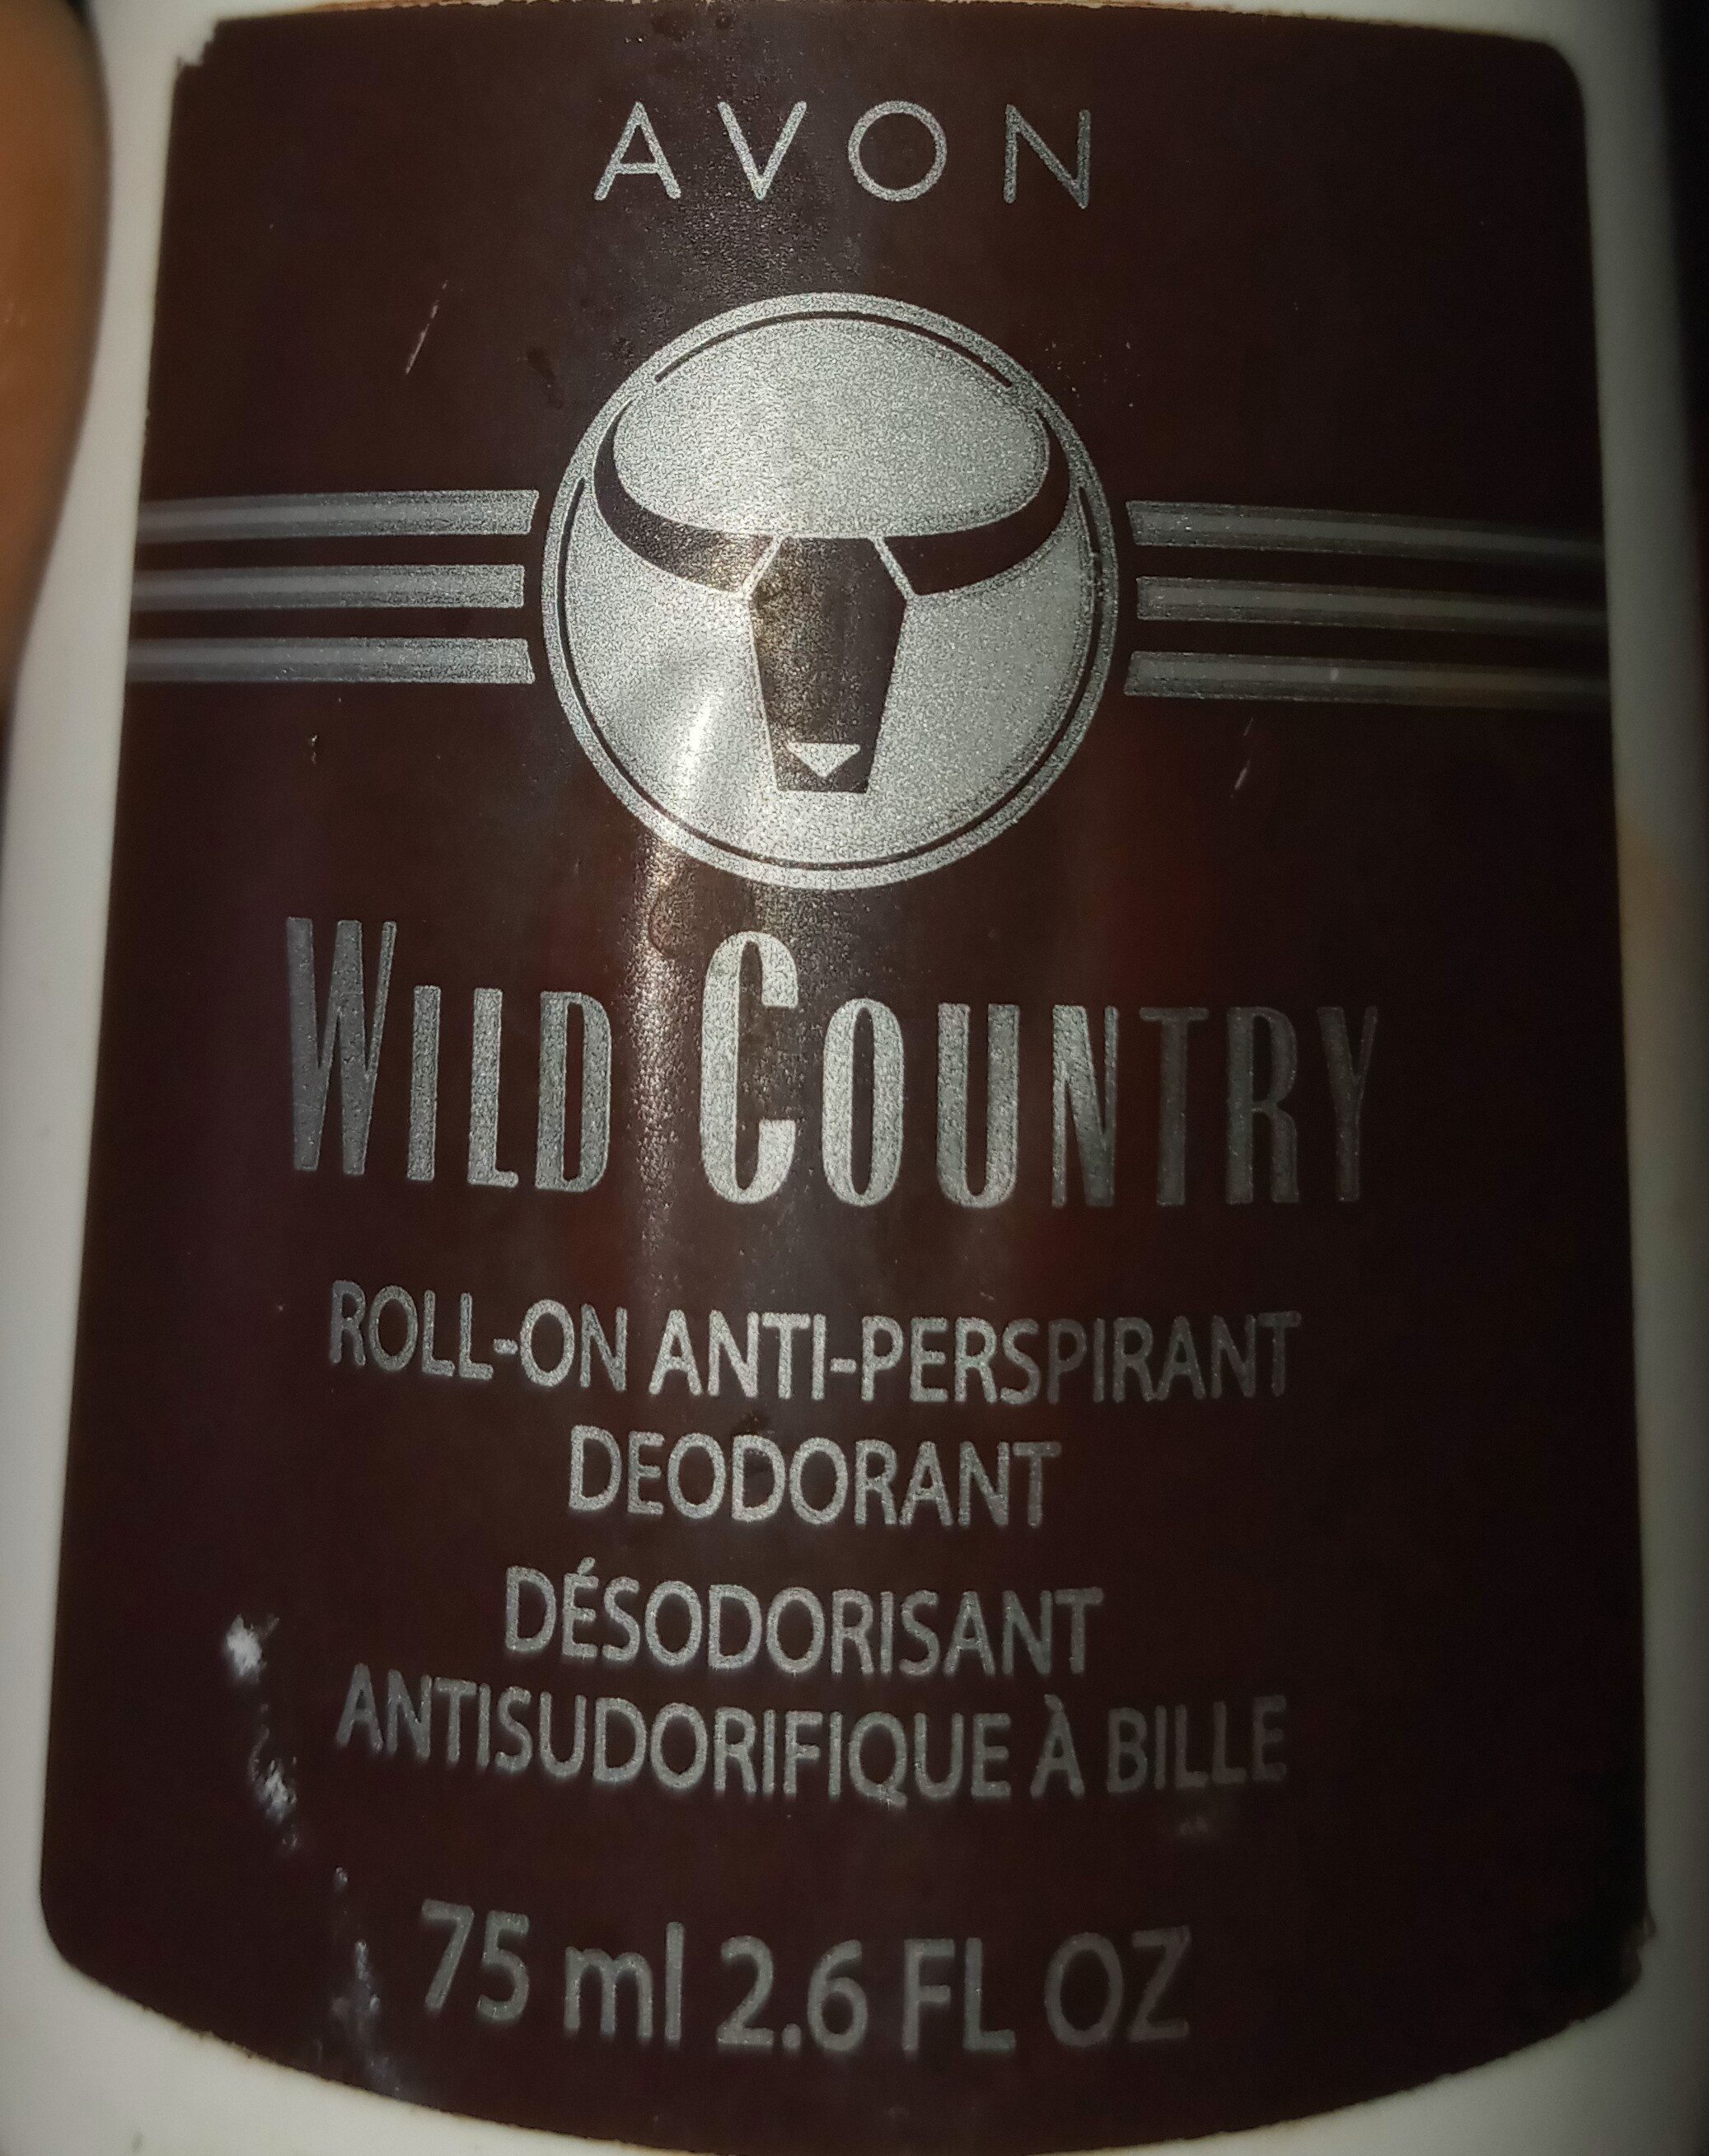 Wild country, roll-on deodorant - Ingredientes - en